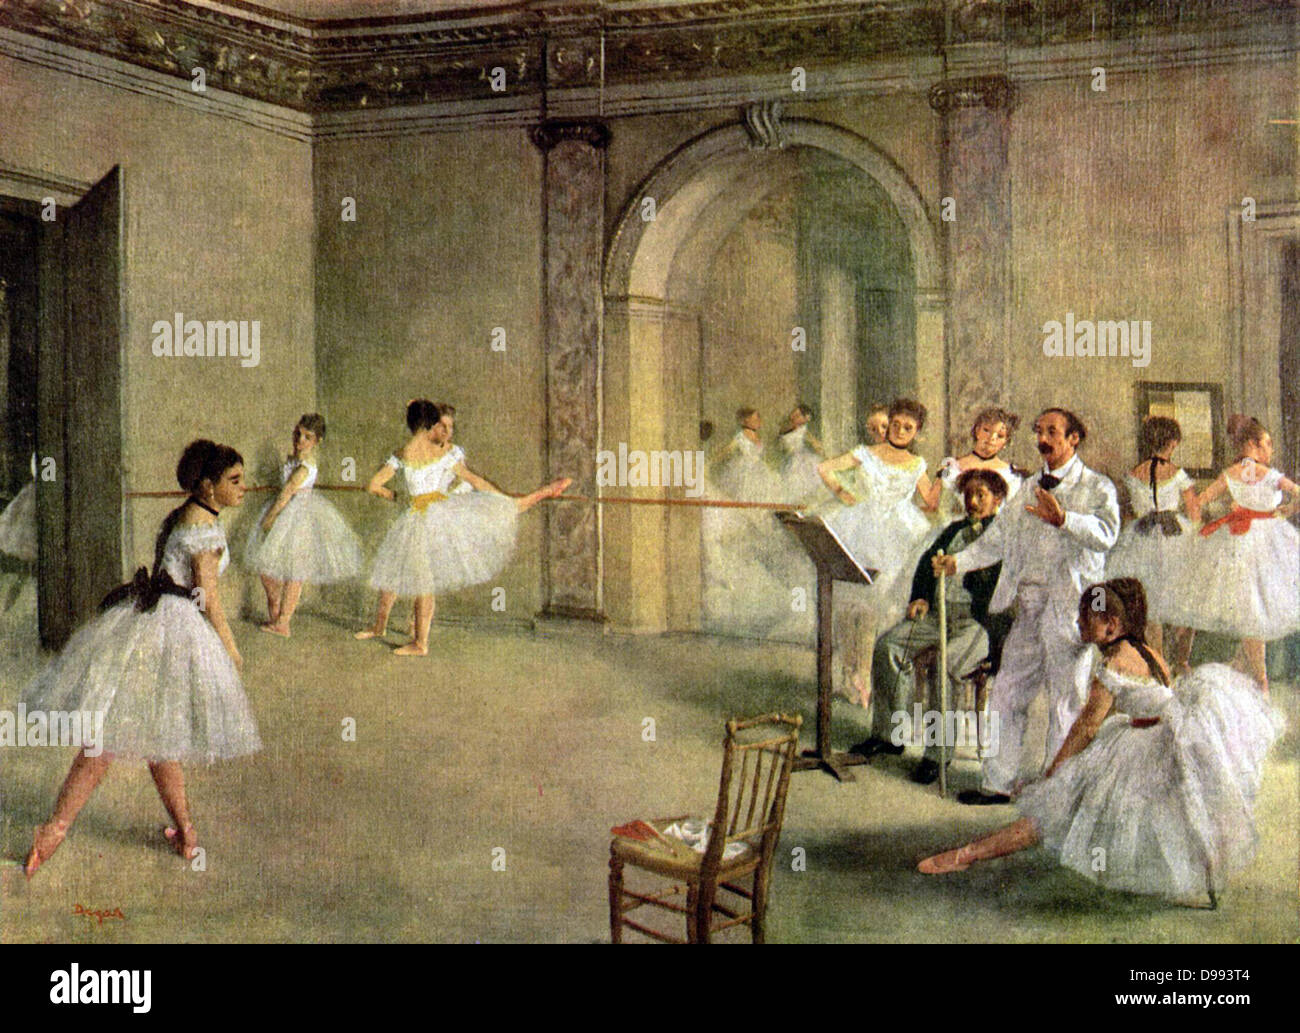 En el ensayo de ballet (1874) por Edgar Degas (19 de julio de 1834 - 27 de septiembre de 1917), el artista francés, famoso por su trabajo en pintura, escultura, grabado y dibujo. Él es considerado como uno de los fundadores del impresionismo, aunque rechazó el término Foto de stock